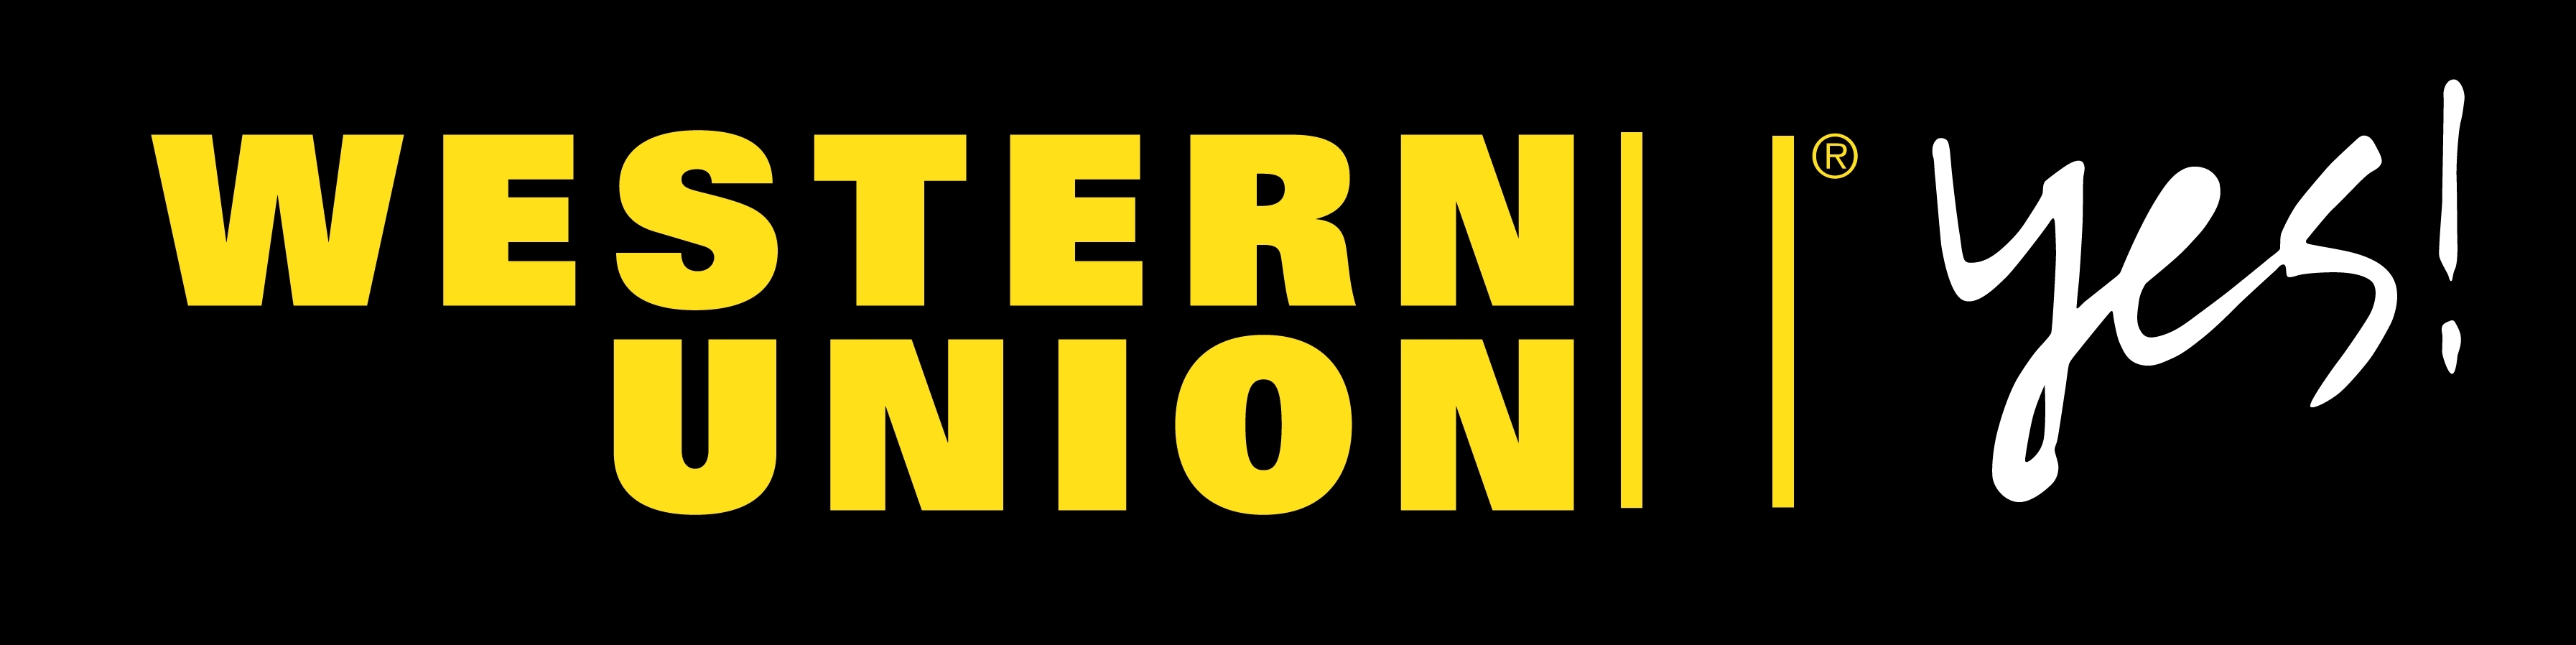 Western Union Image